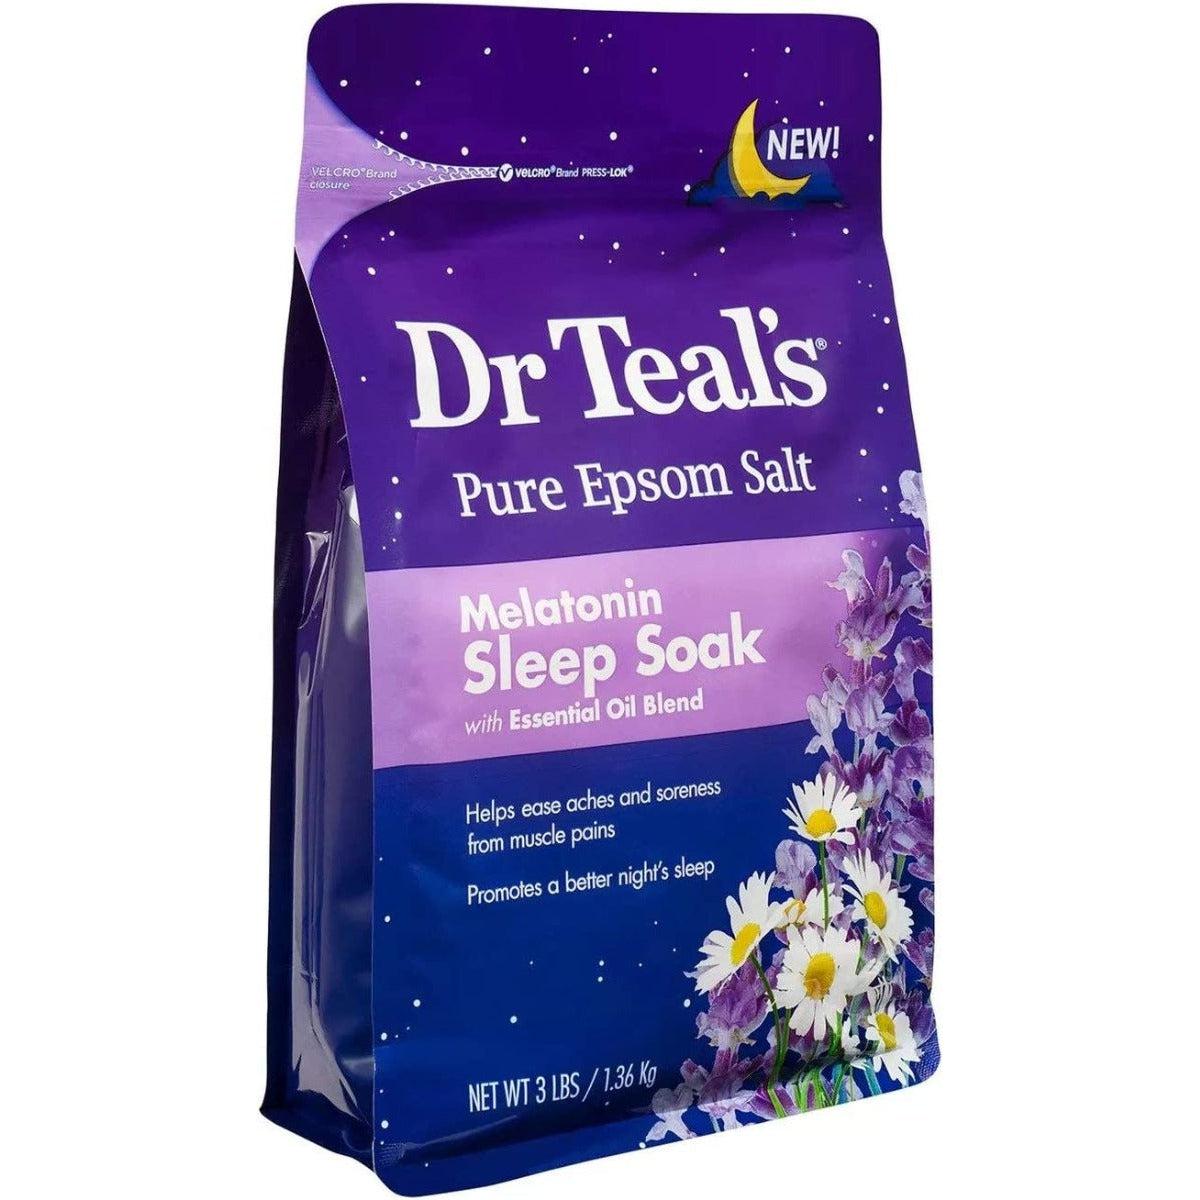 Dr. Teal's Pure Epsom Salt Melatonin Sleep Soak with Essential Oils 1.36kg